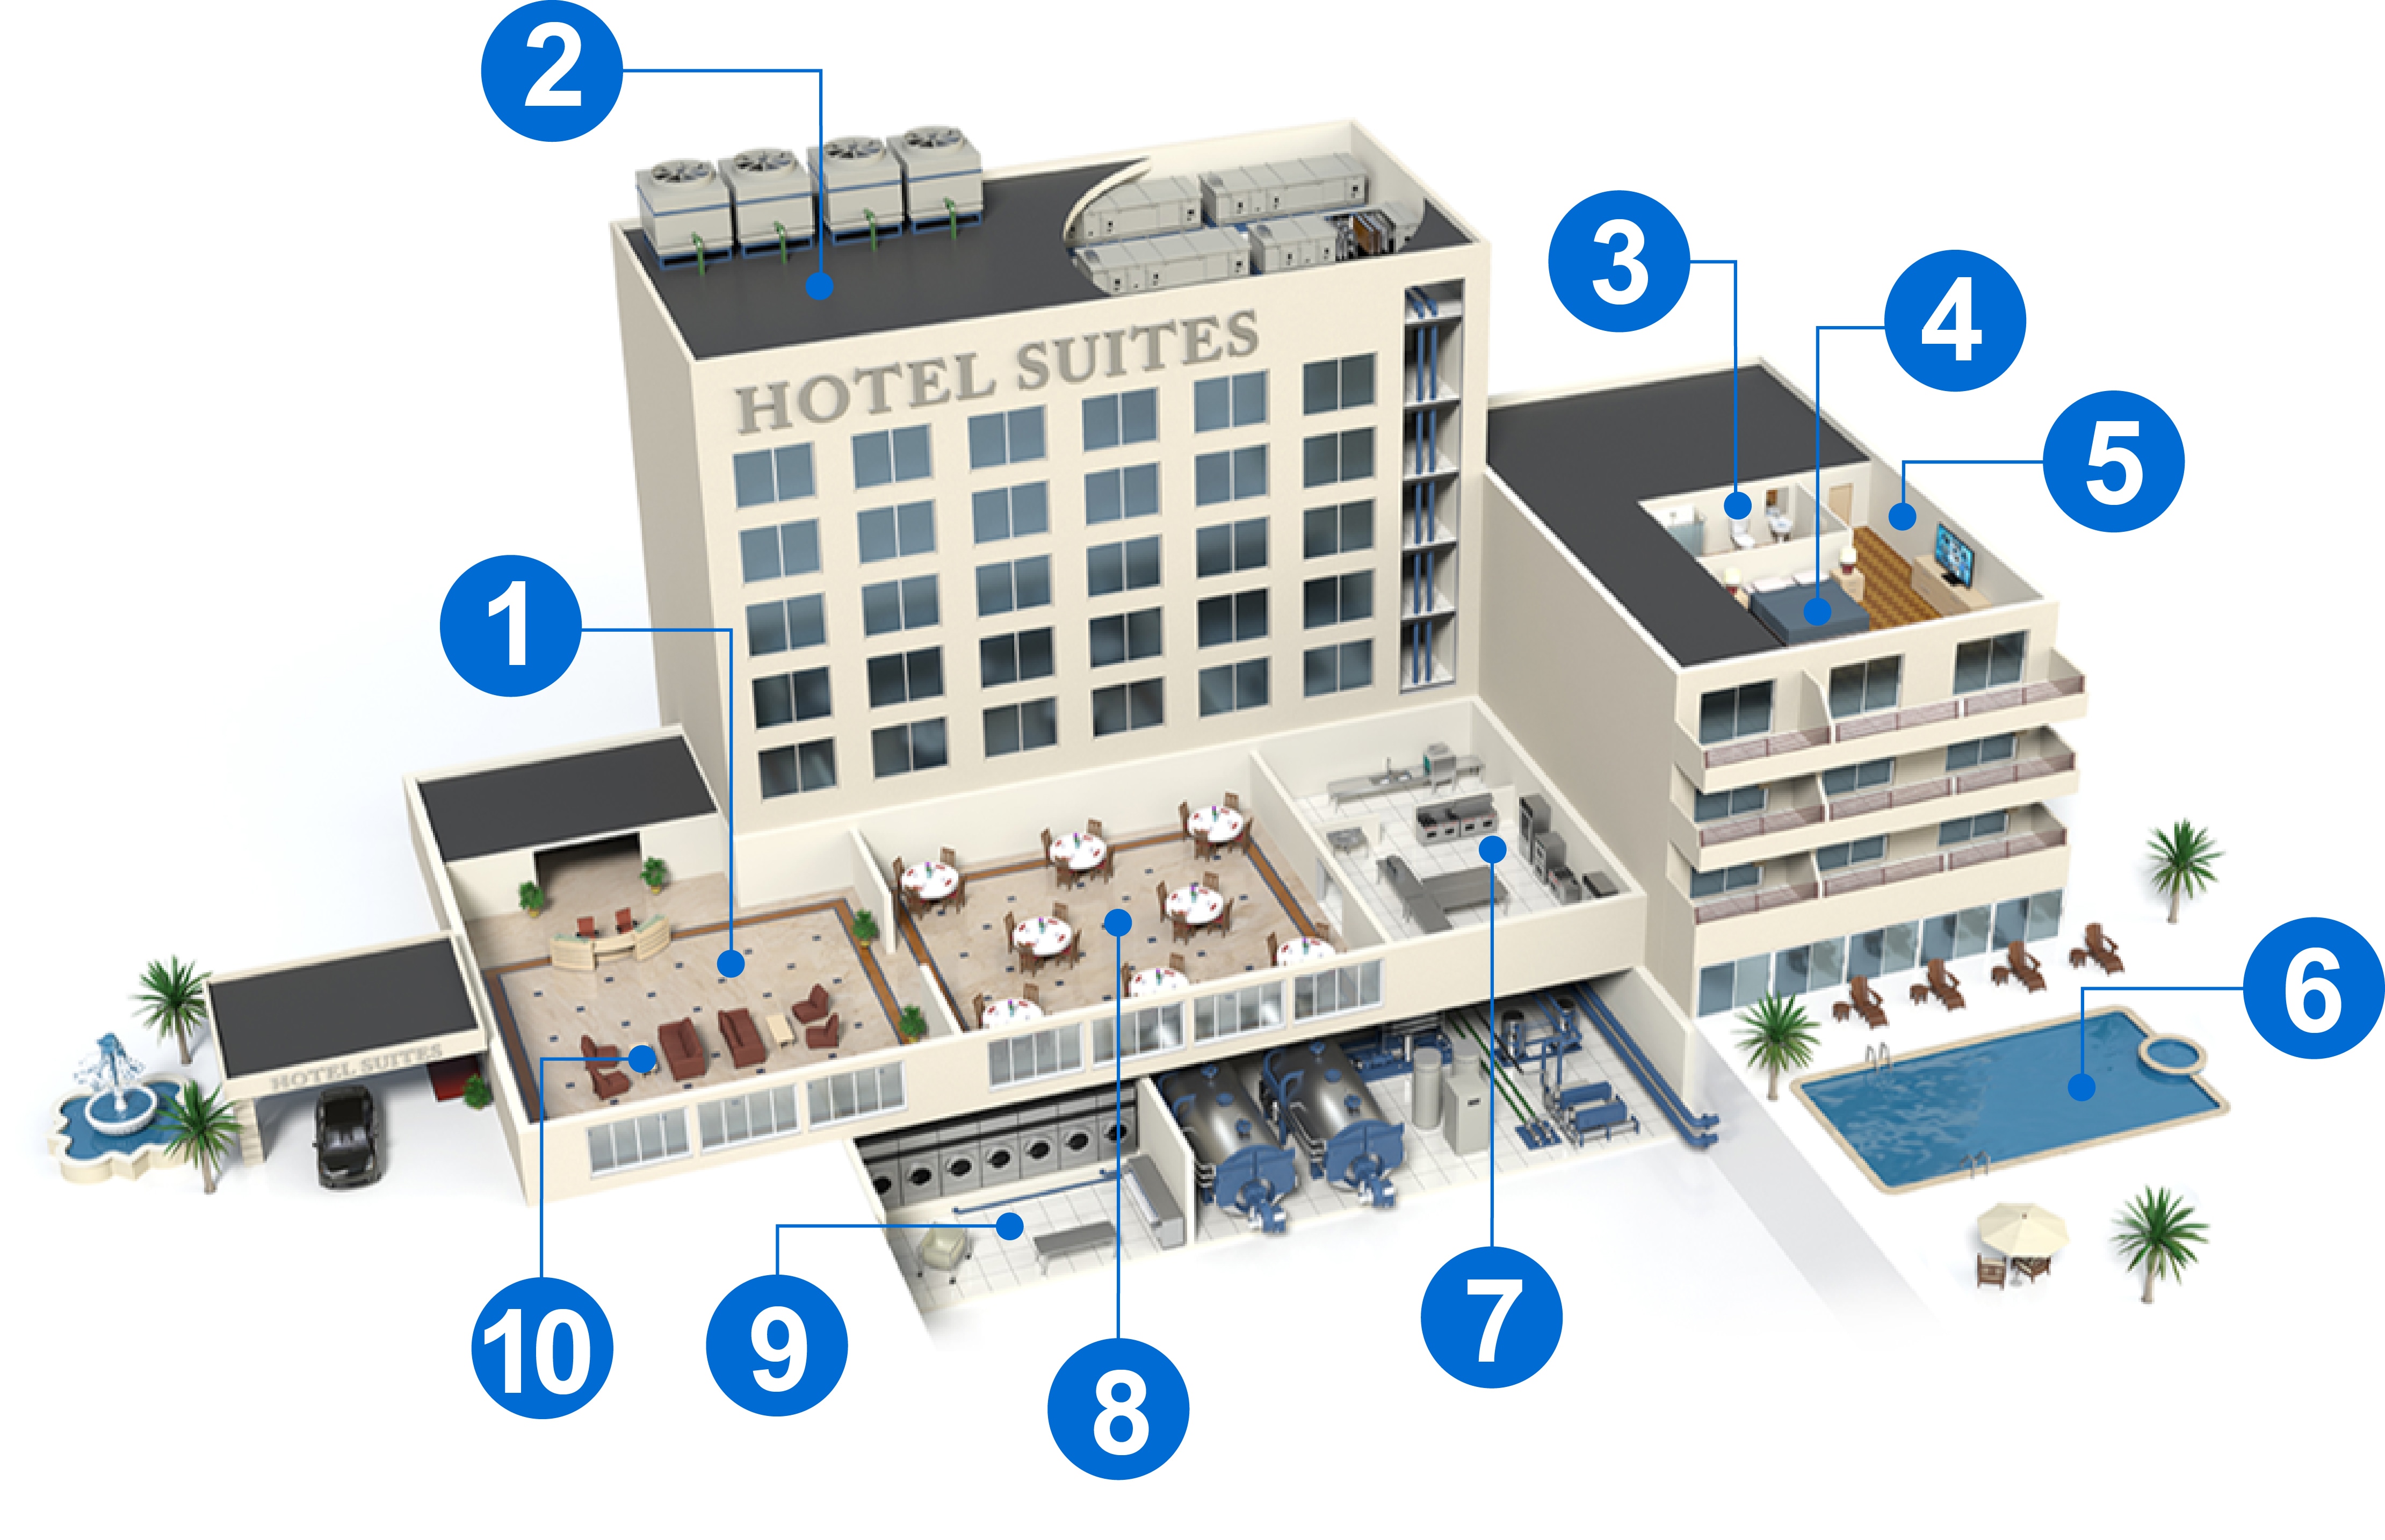 Hotel floor plan schematic with corresponding numbered descriptions.